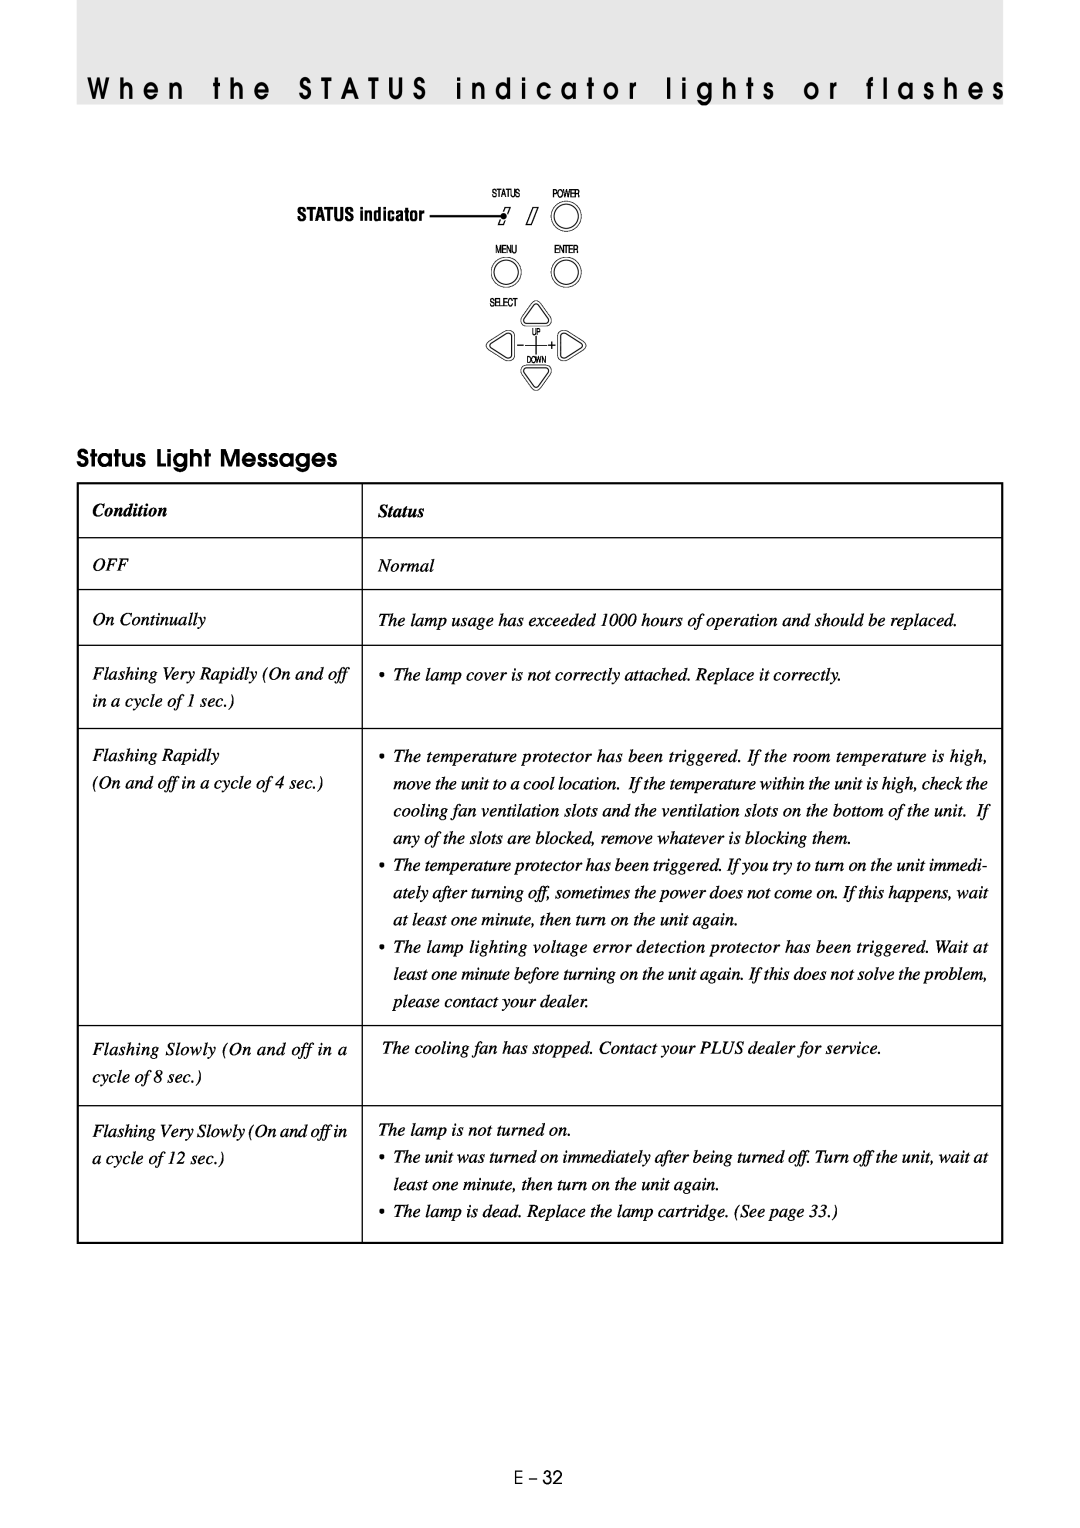 PLUS Vision U2-1130/U2-1110 user manual Status Light Messages, STATUS indicator, Condition 